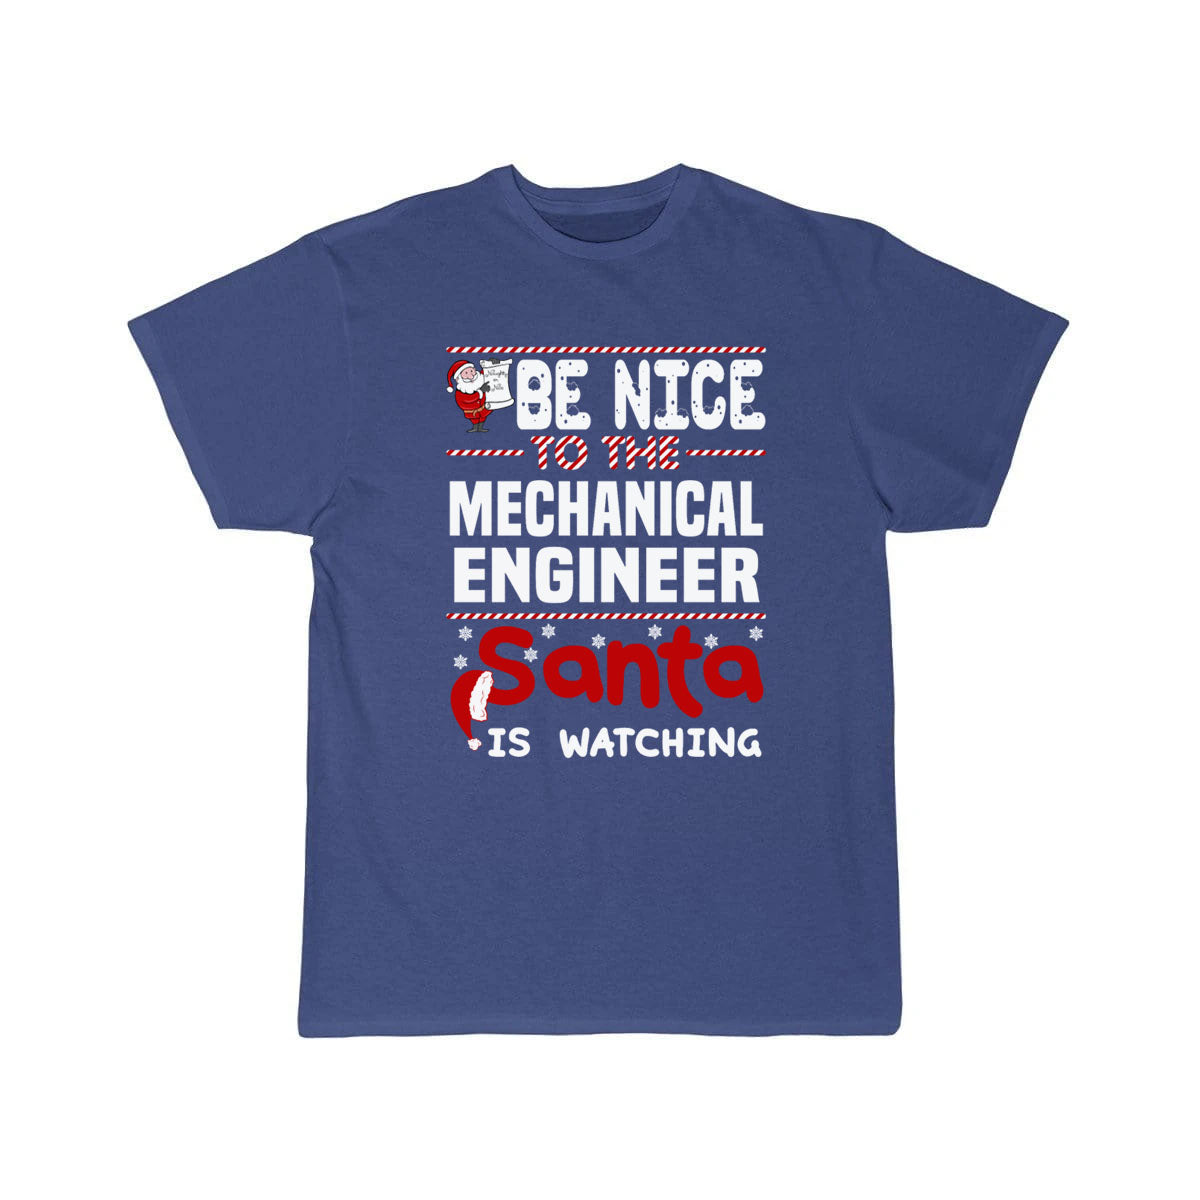 Mechanic engineer t shirt THE AV8R